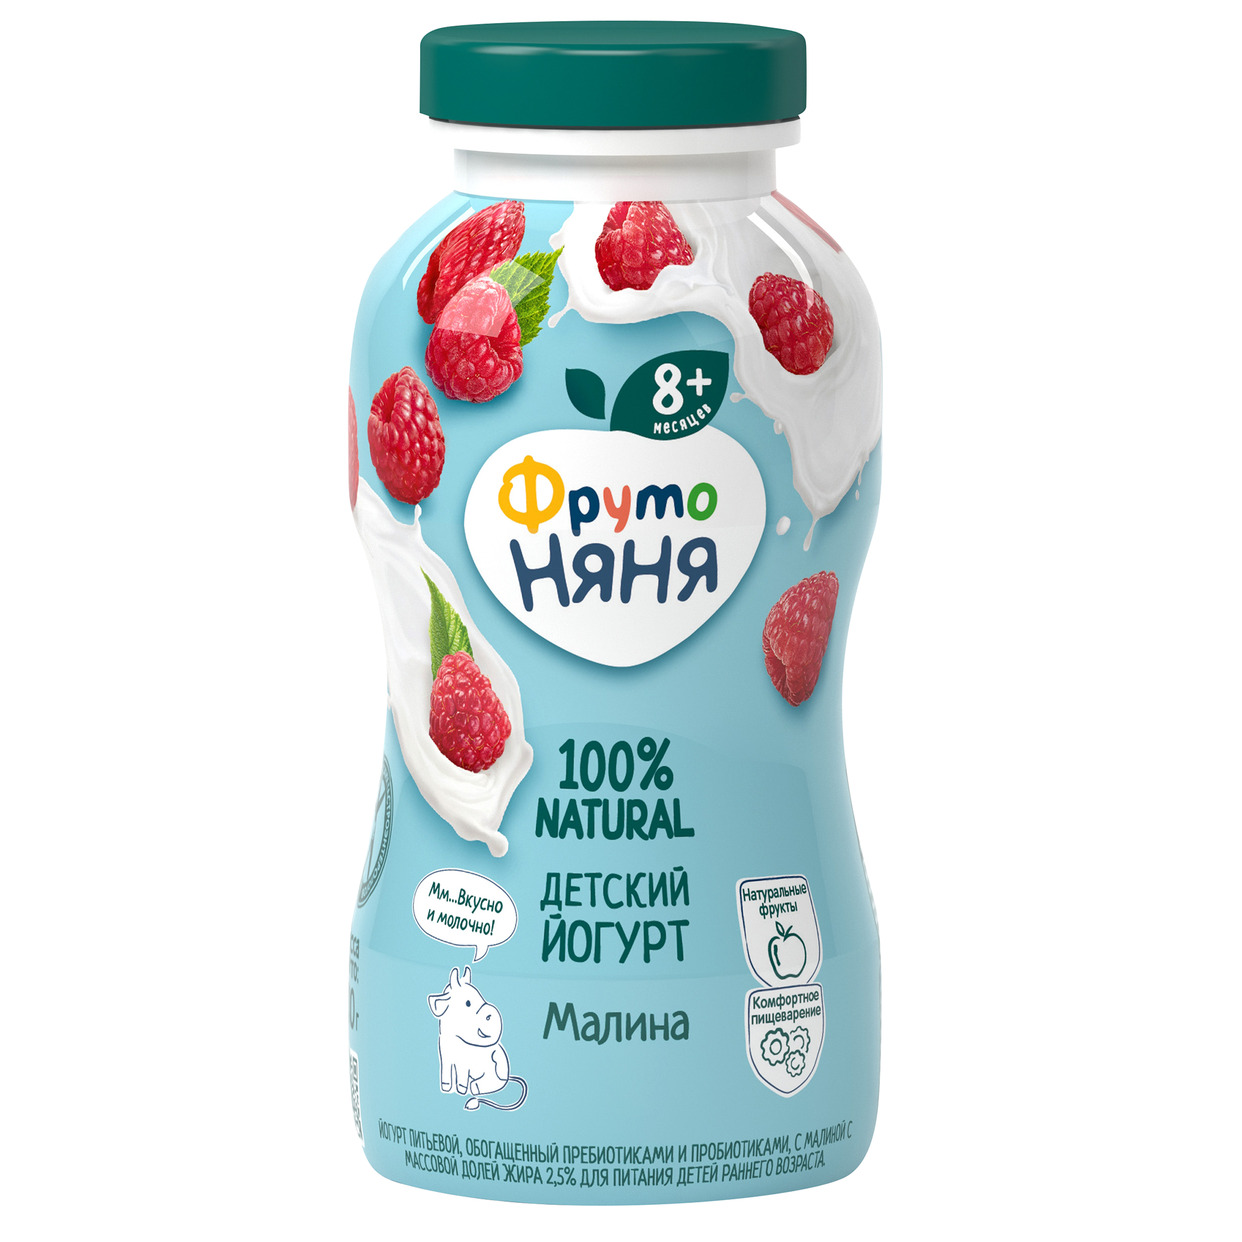 Йогурт питьевой ФрутоНяня Малина 2.5% 200мл по акции в Пятерочке